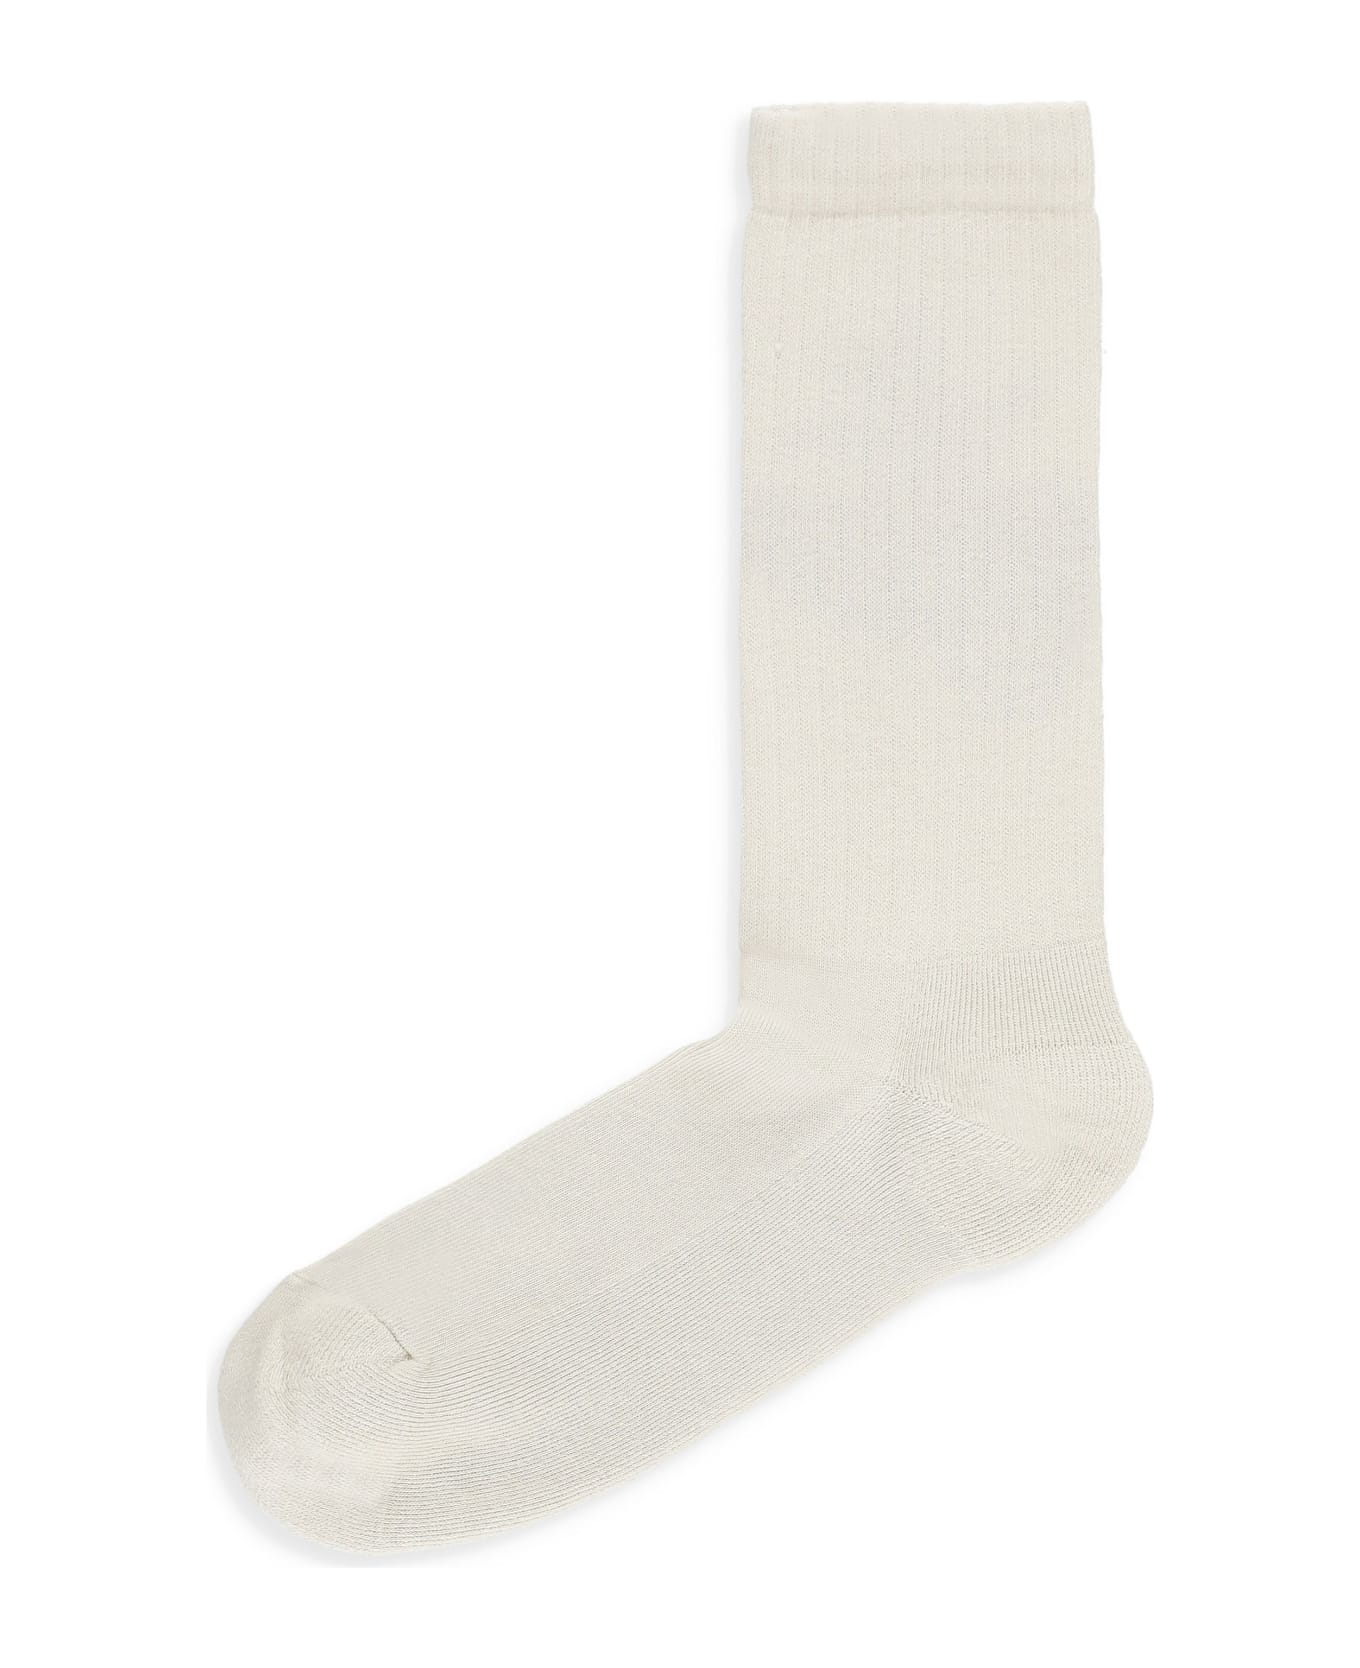 Barrow Logoed Socks - Beige 靴下